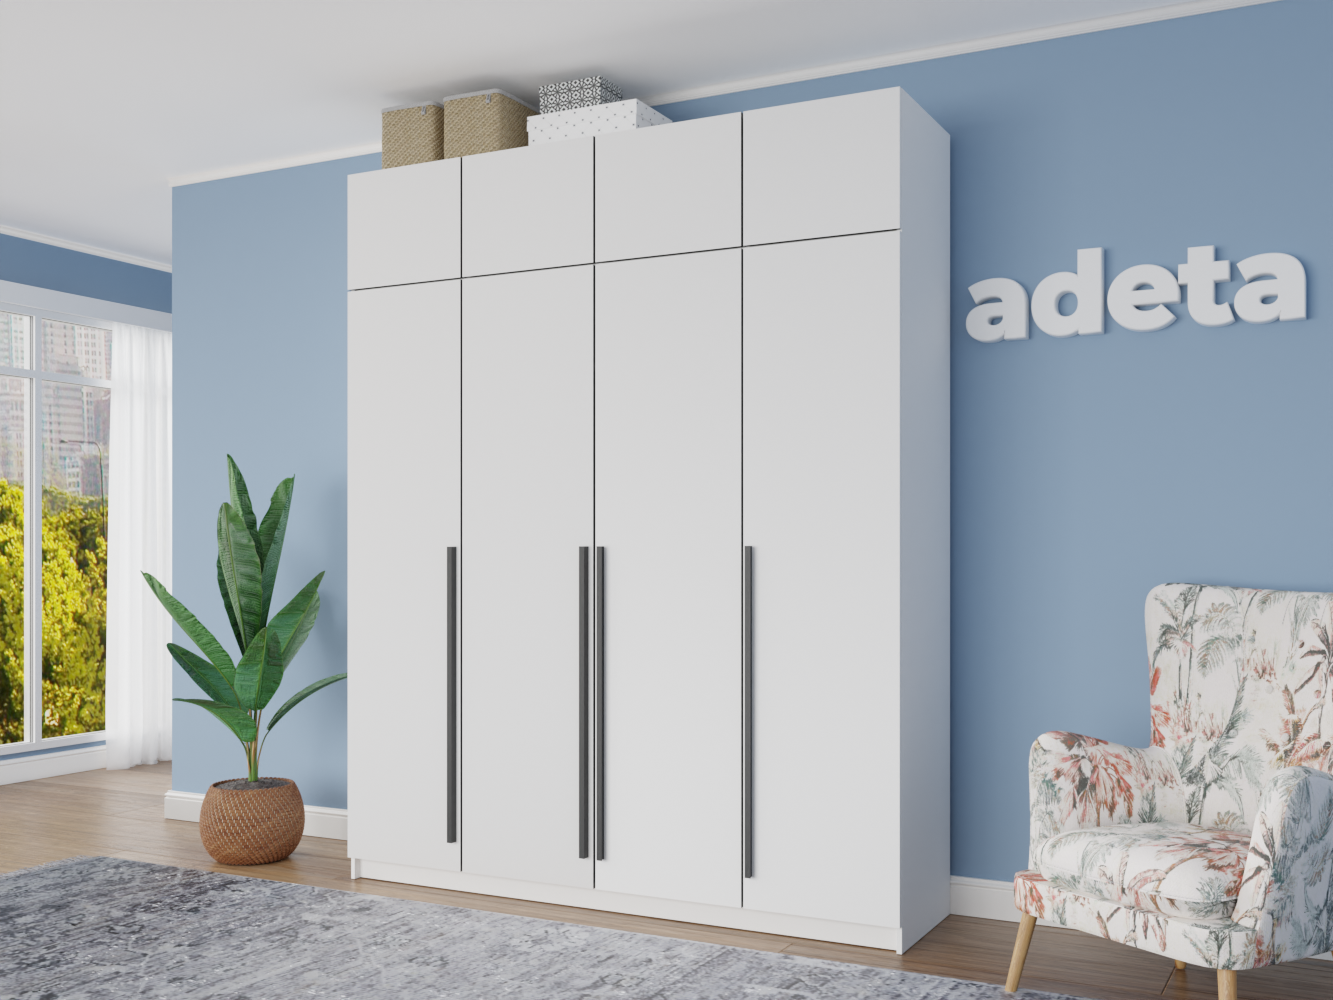 IKEA – мебель, предметы интерьера и вдохновение для вашего дома. | IKEA Lietuva